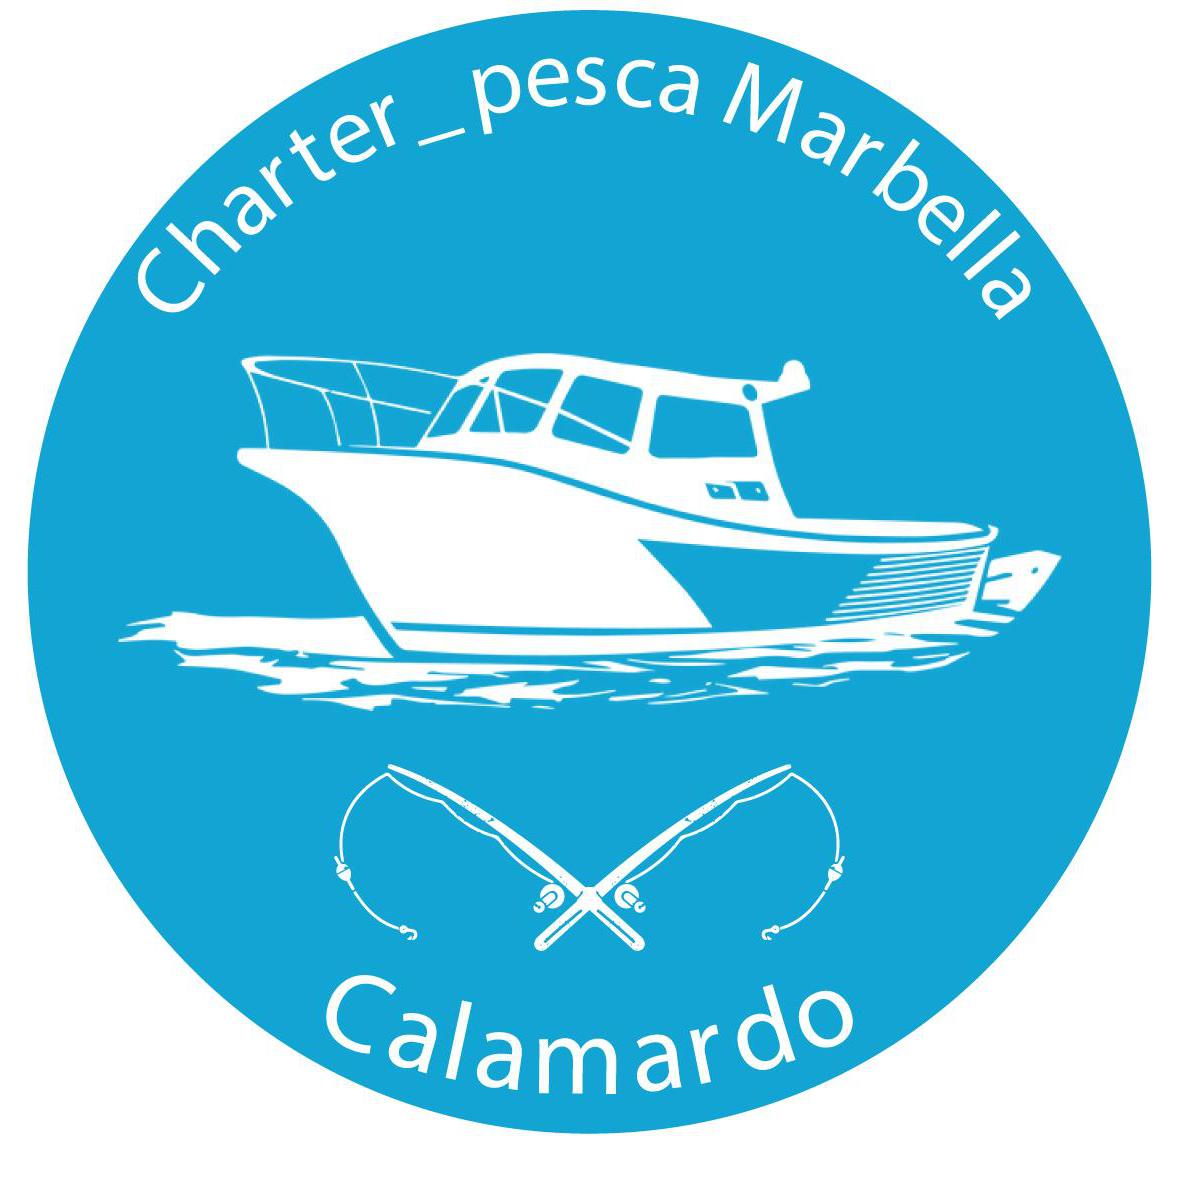 Charter_ Pesca Marbella - Boat Rental Service - Marbella - 659 07 30 74 Spain | ShowMeLocal.com